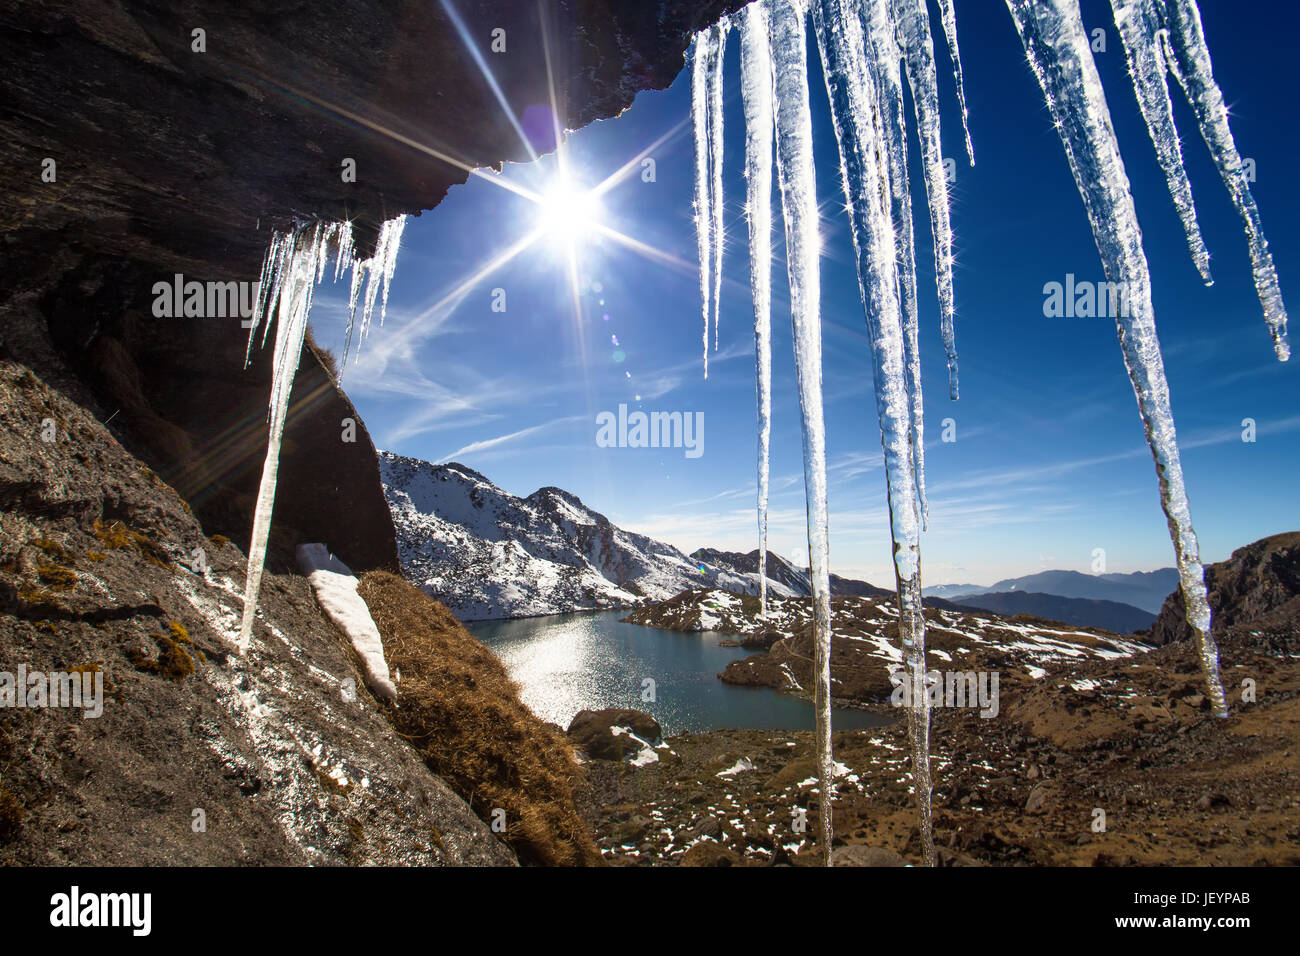 Nepal, Langtang region, hills around Gosaikunda lake (4,430 m) in sunny weather. Stock Photo